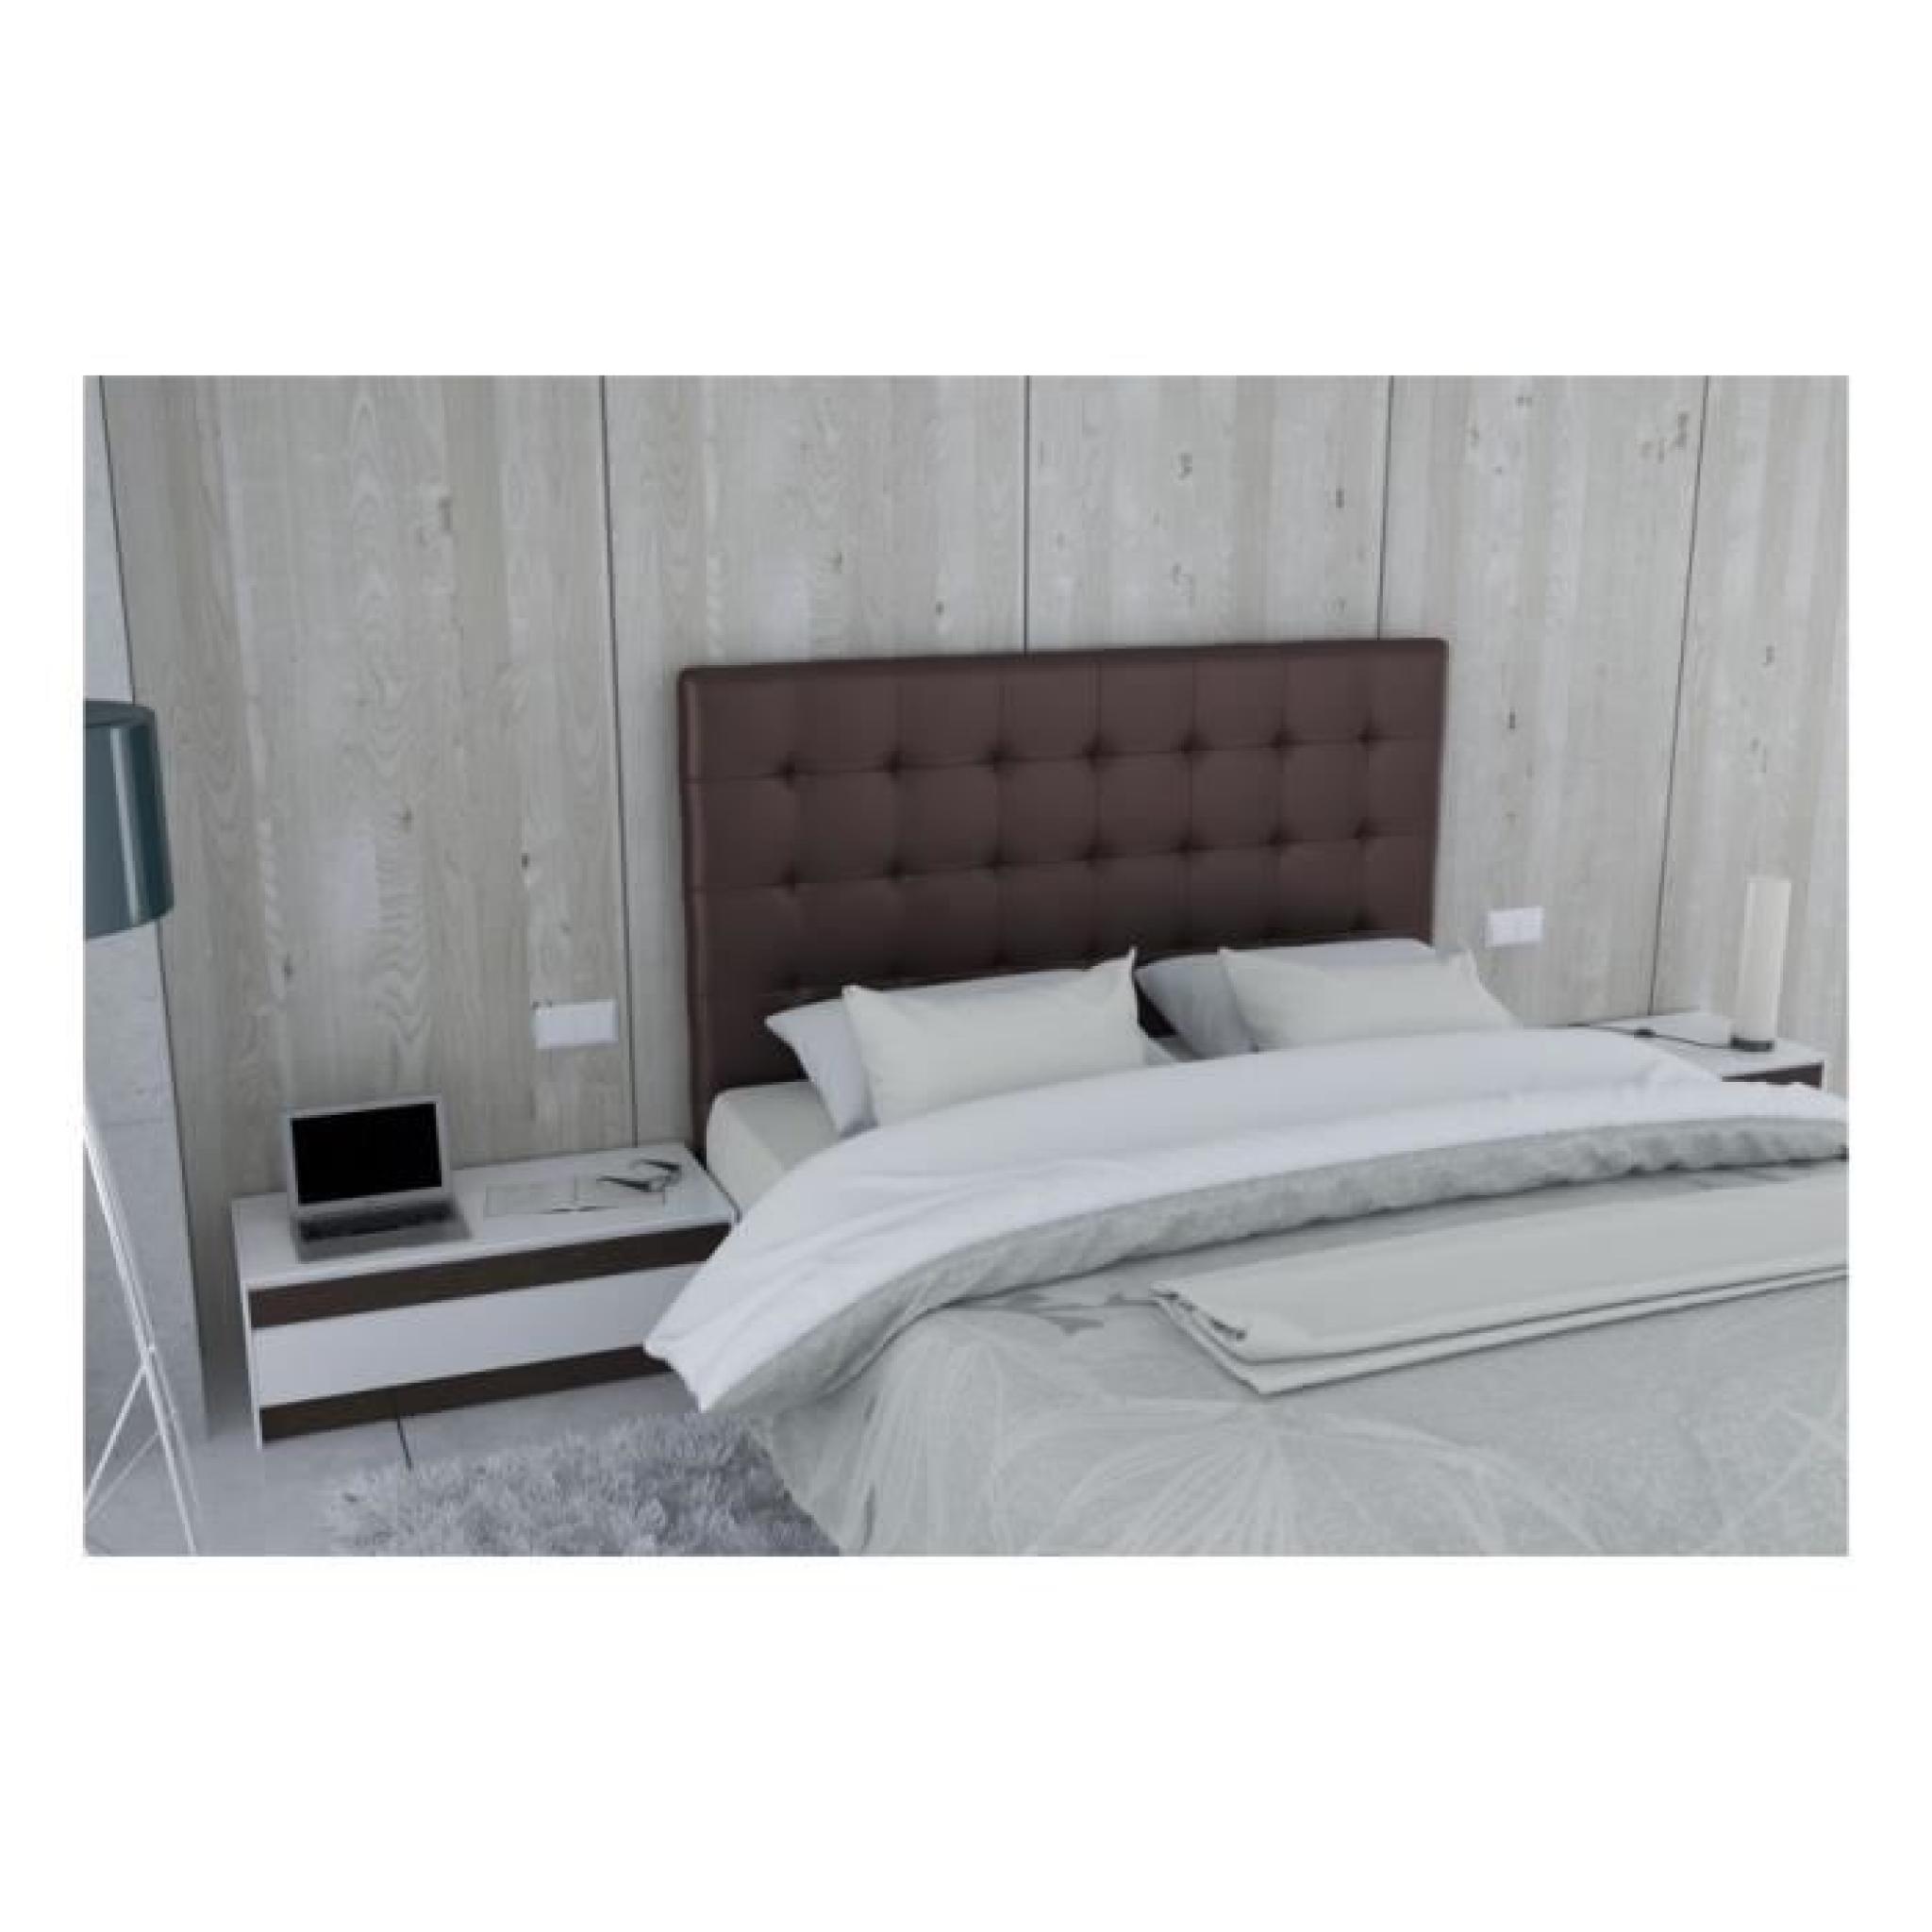 Tête de lit en PU chocolat - Venise Taille - 180 cm pas cher